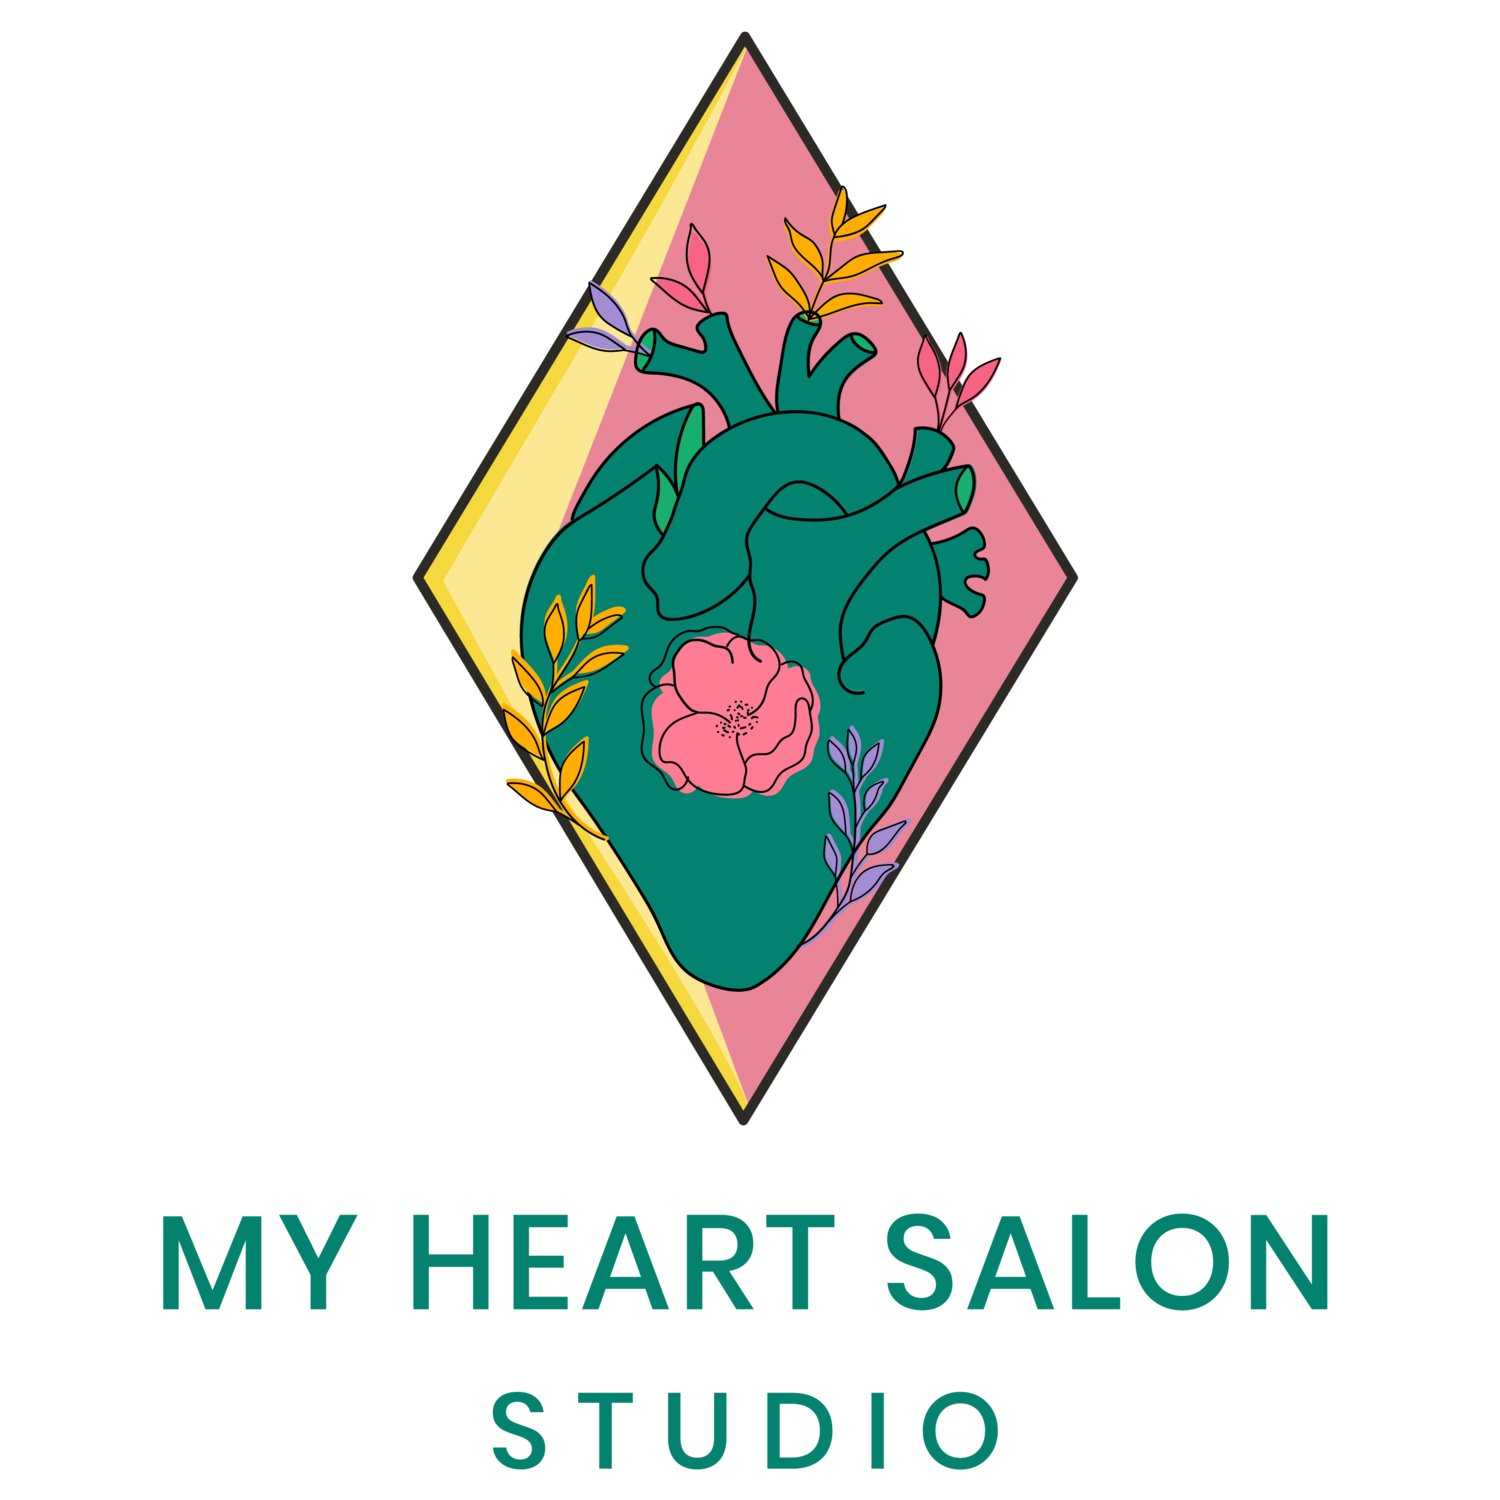 My Heart Salon Studio